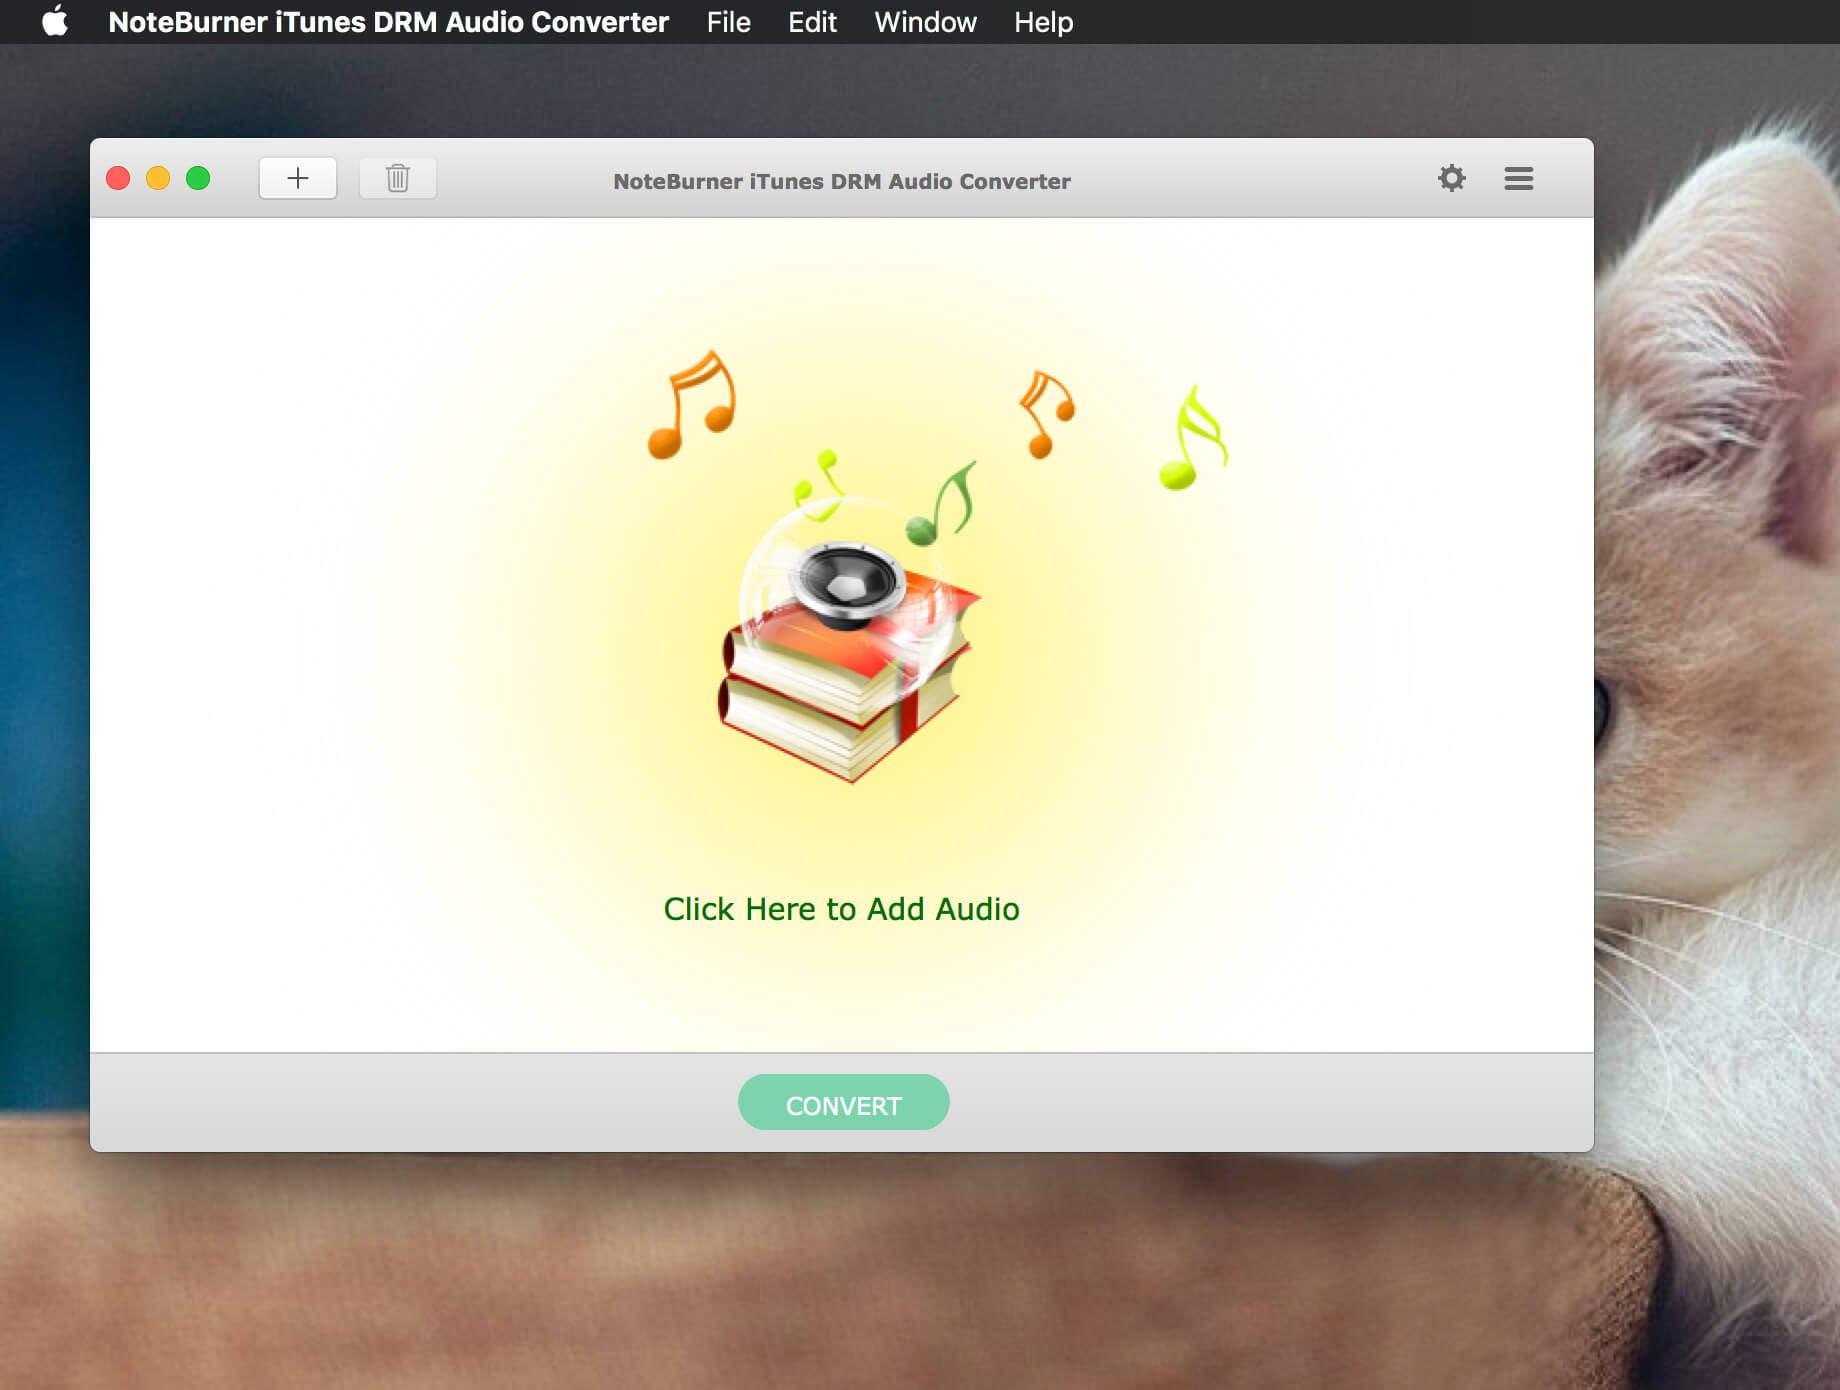 NoteBurner iTunes DRM Audio Converter 3.2.0 iTunes音乐转换工具